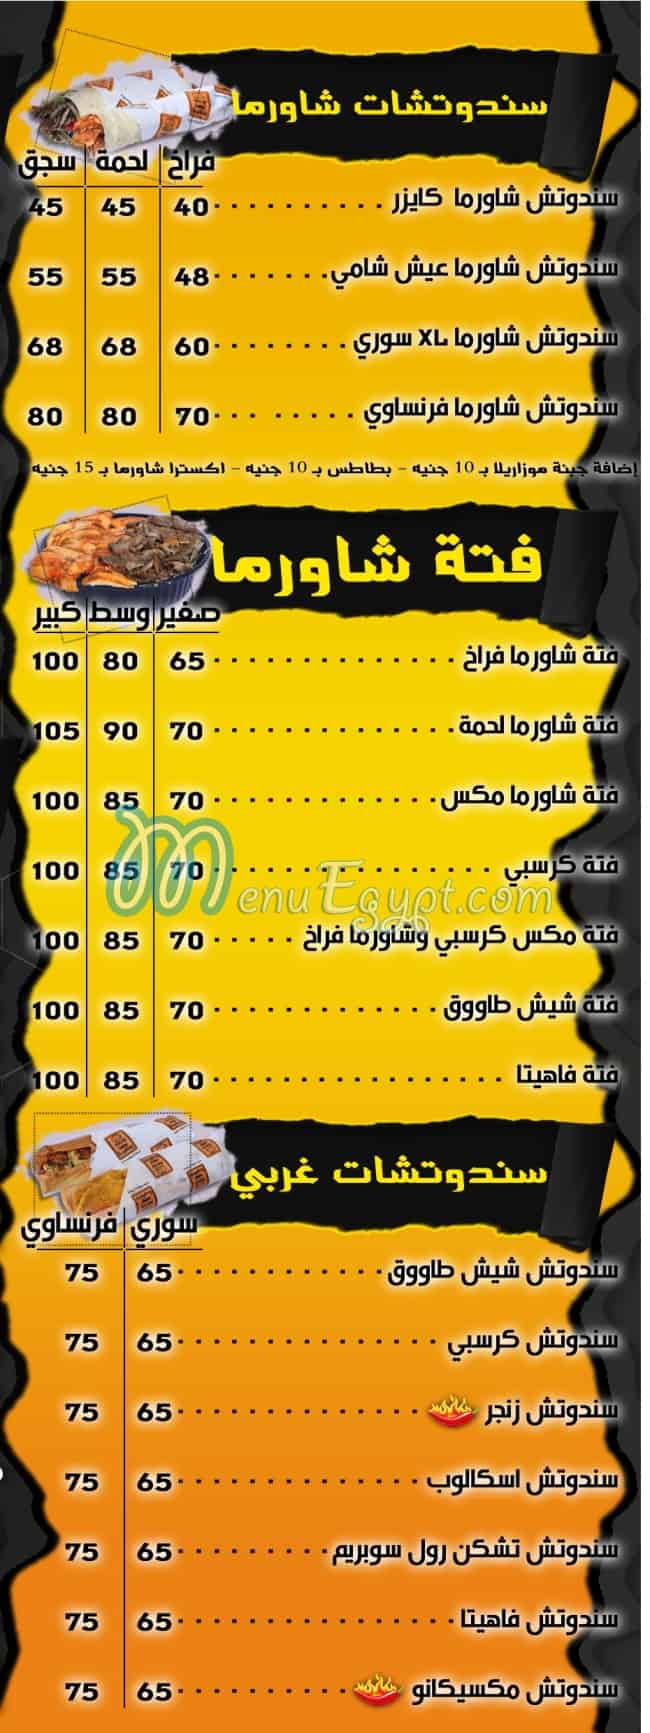 Sobhy El Demshqy menu prices